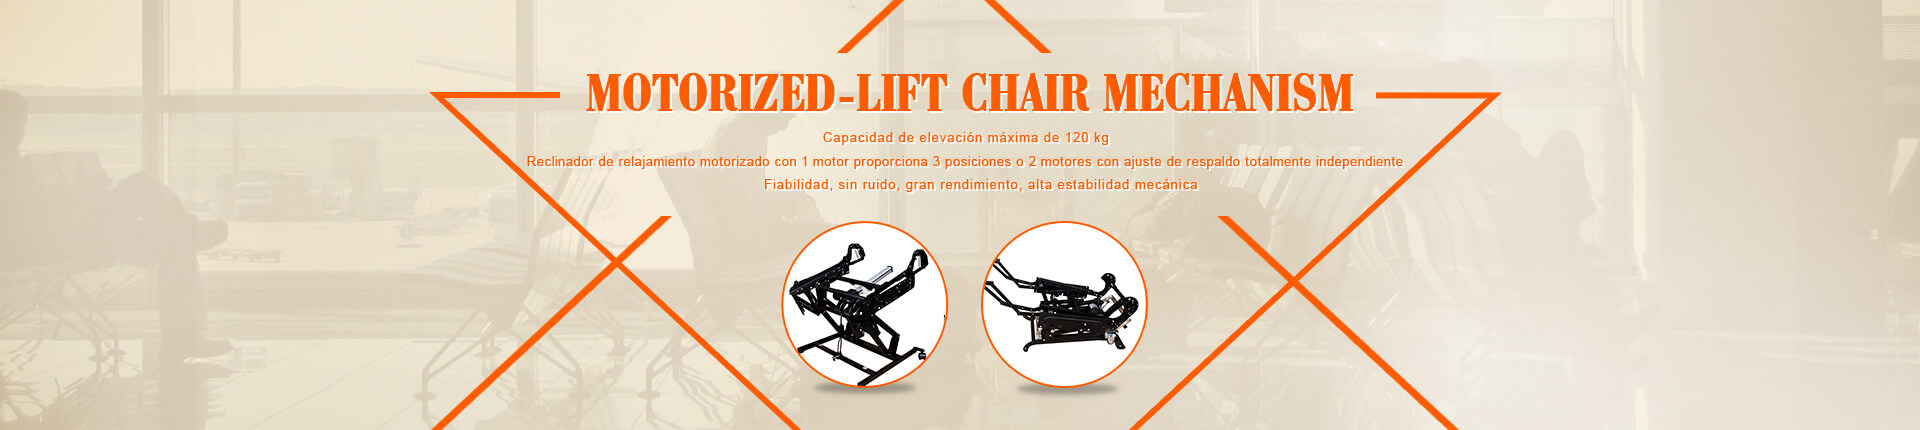 Mecanismo de elevación de silla